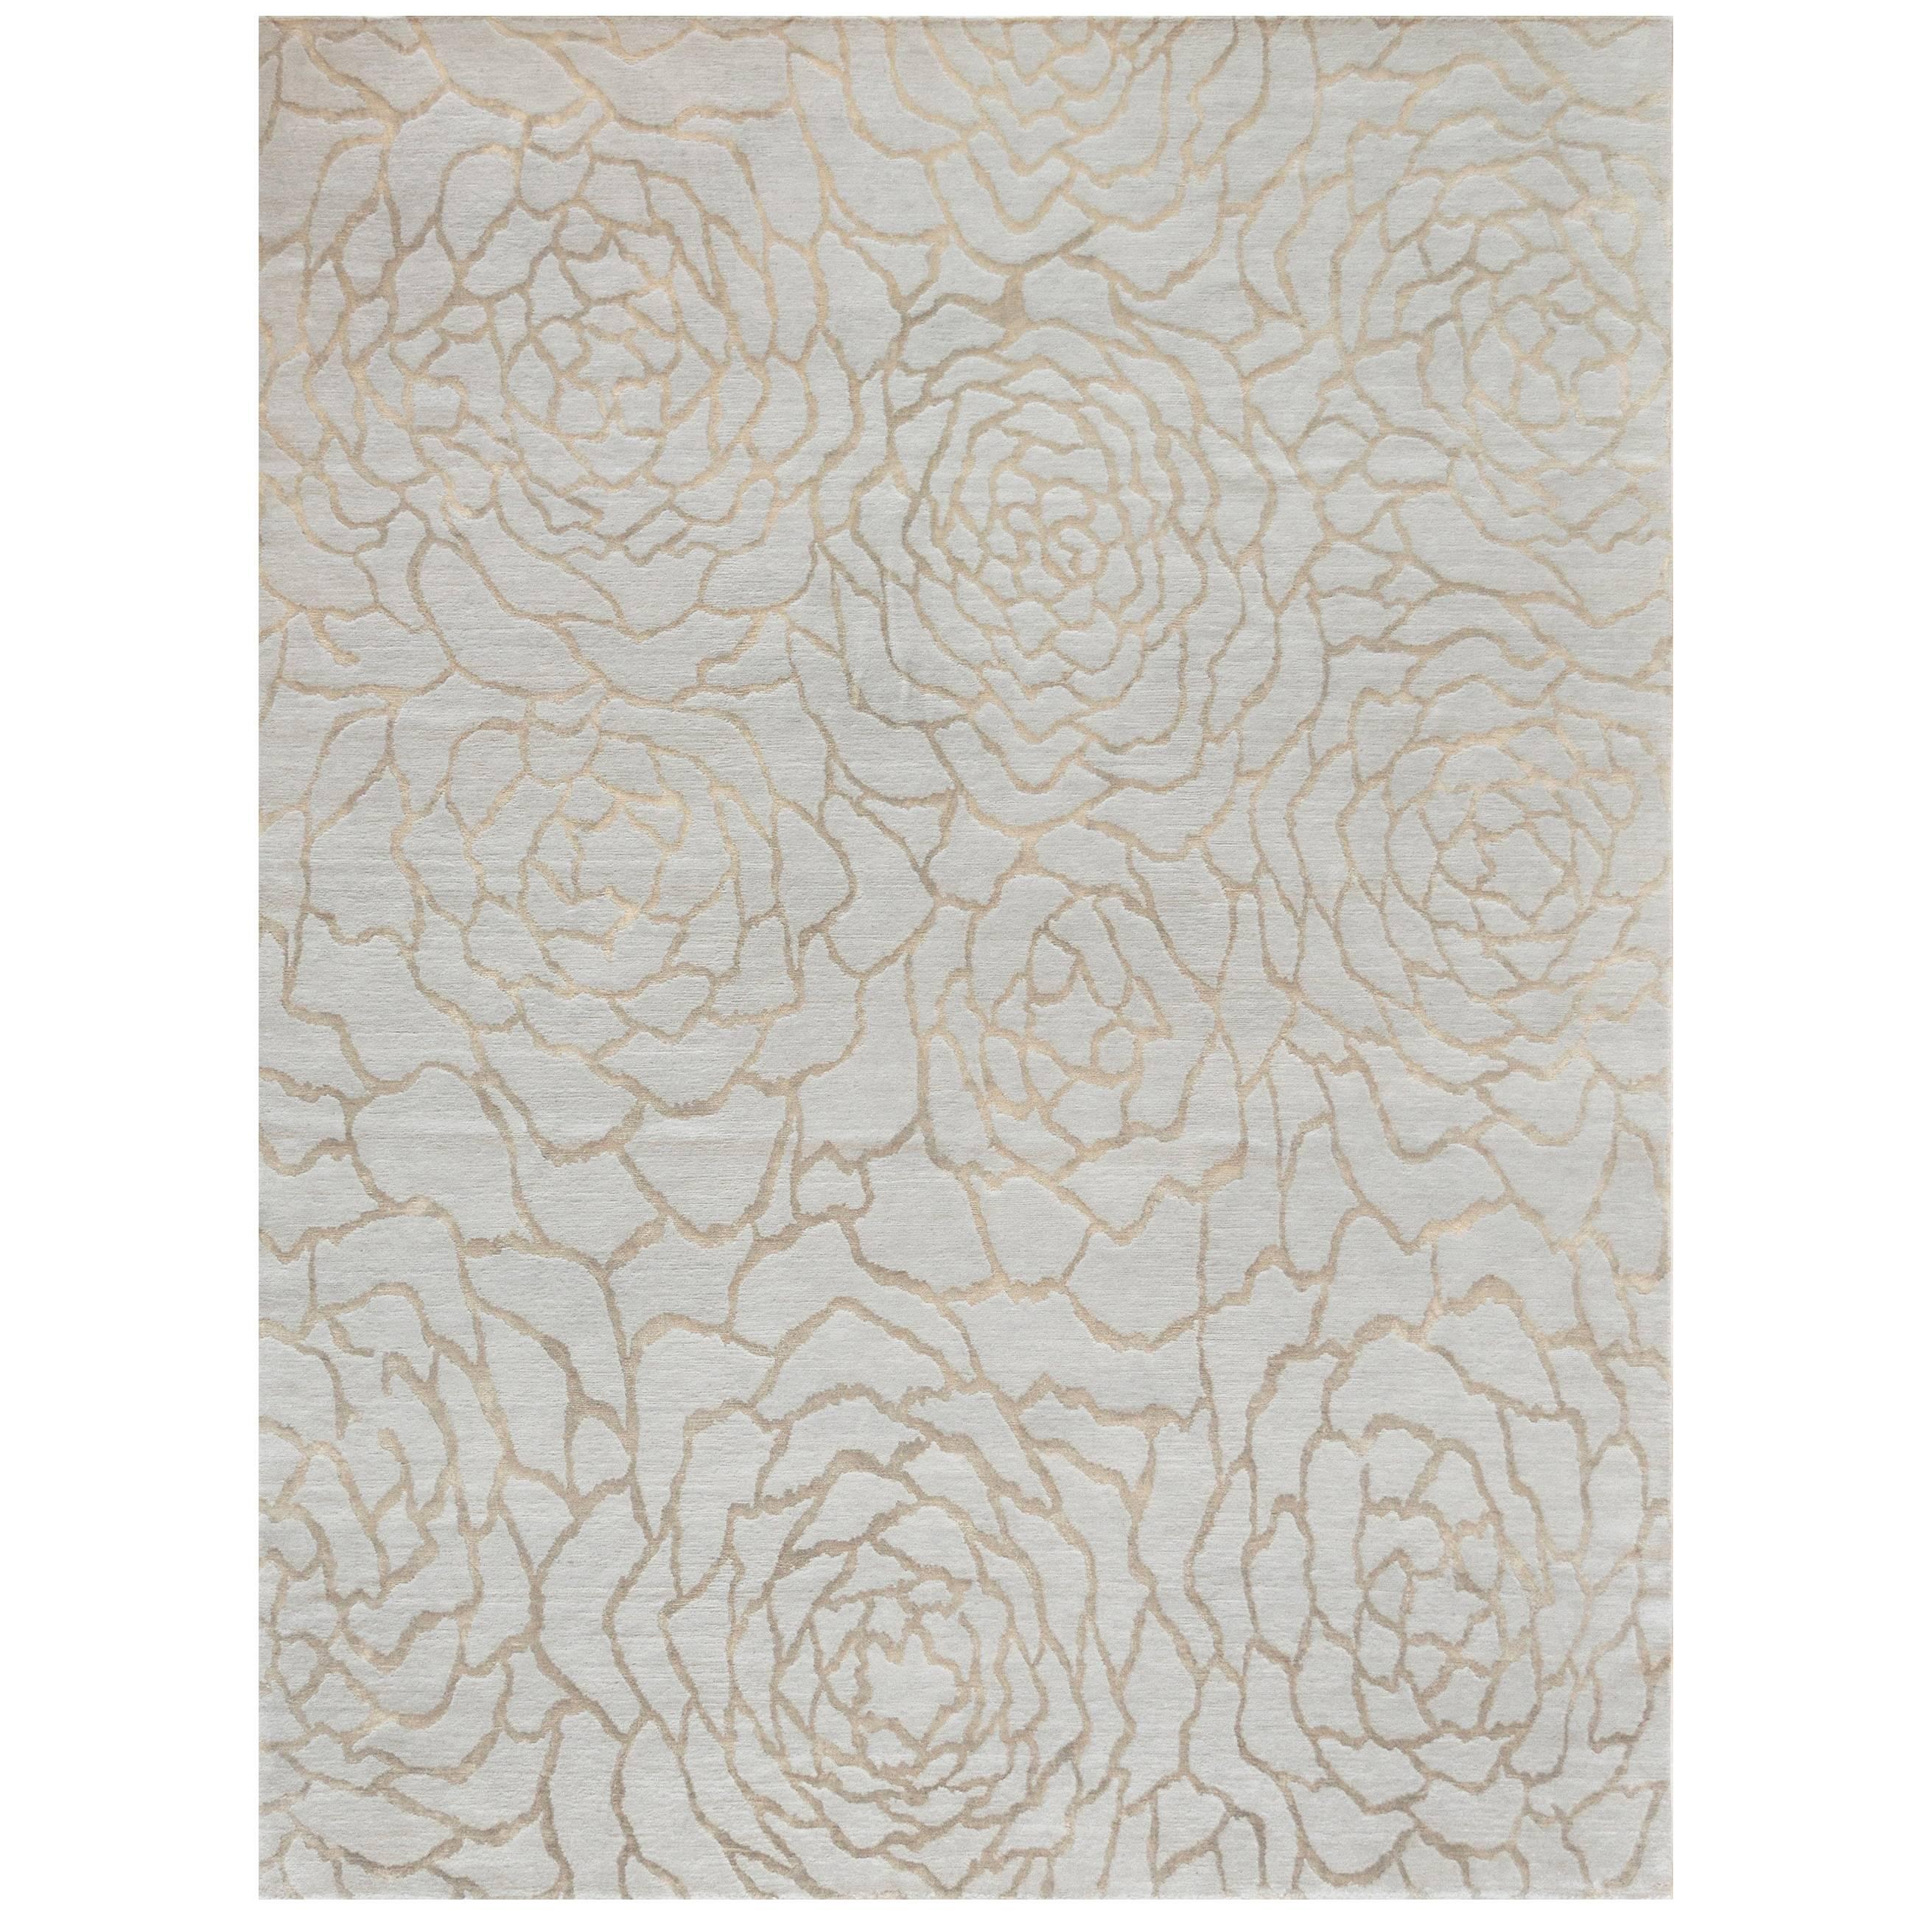 Tapis moderne Mansour en laine et soie à motifs de fleurs, tissé à la main, collection abstraite